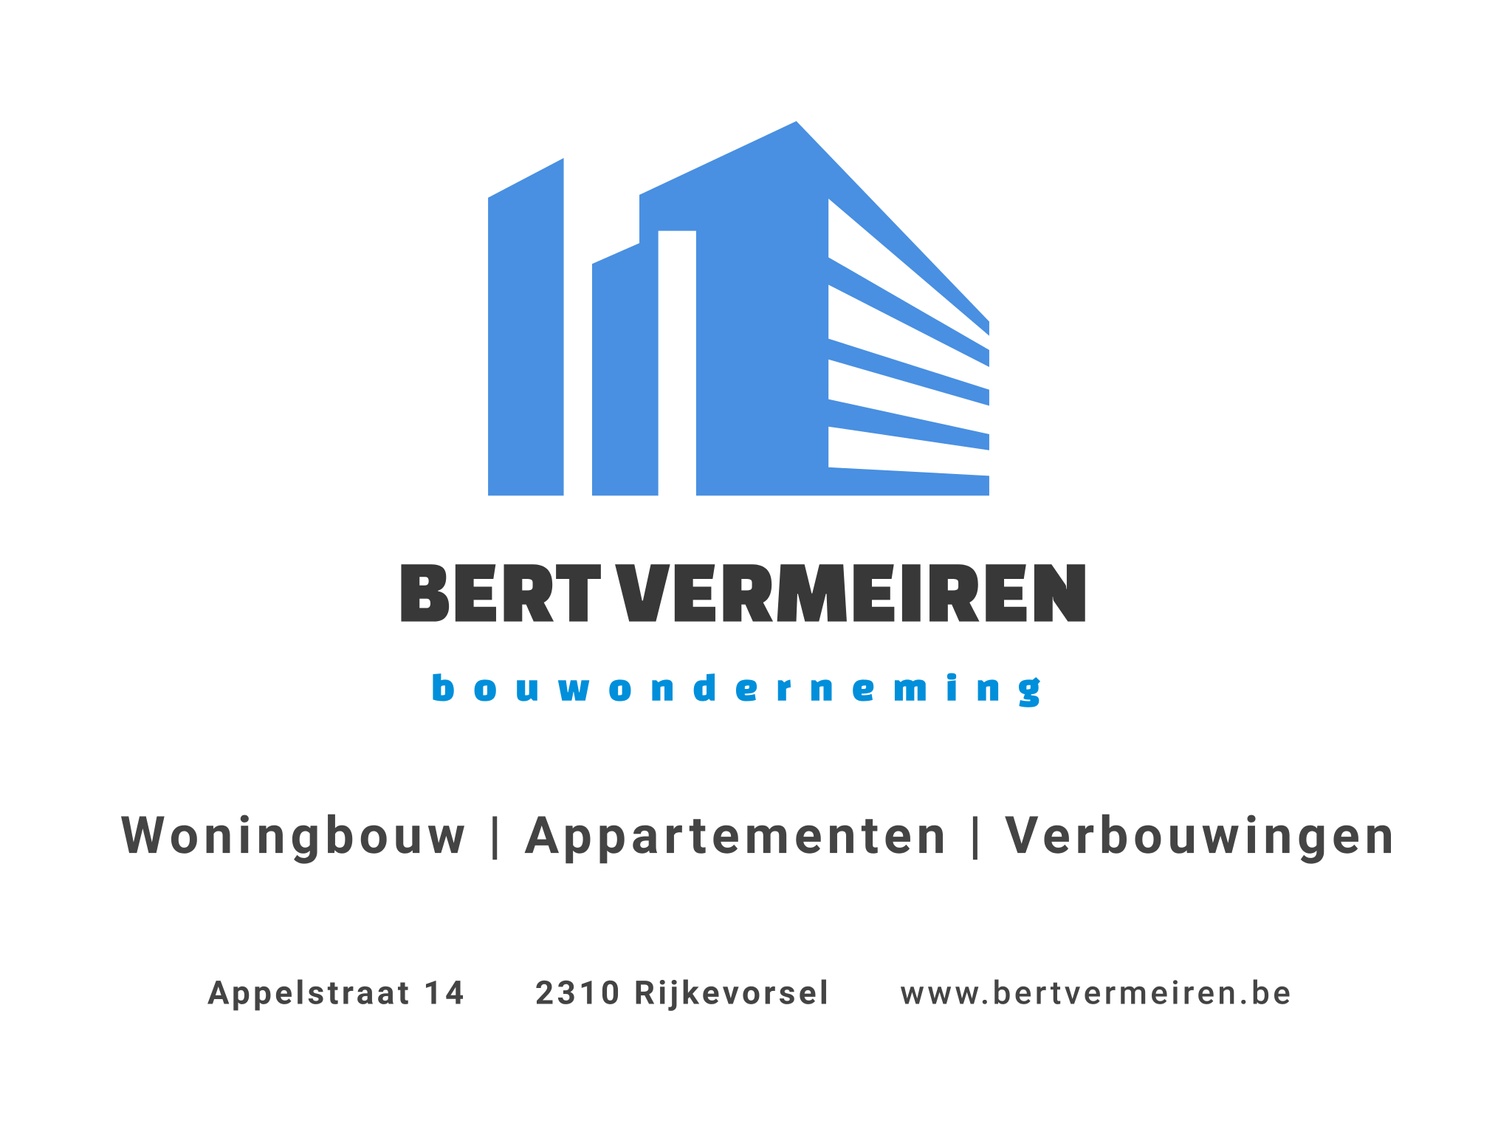 Bouwonderneming Bert Vermeiren logo